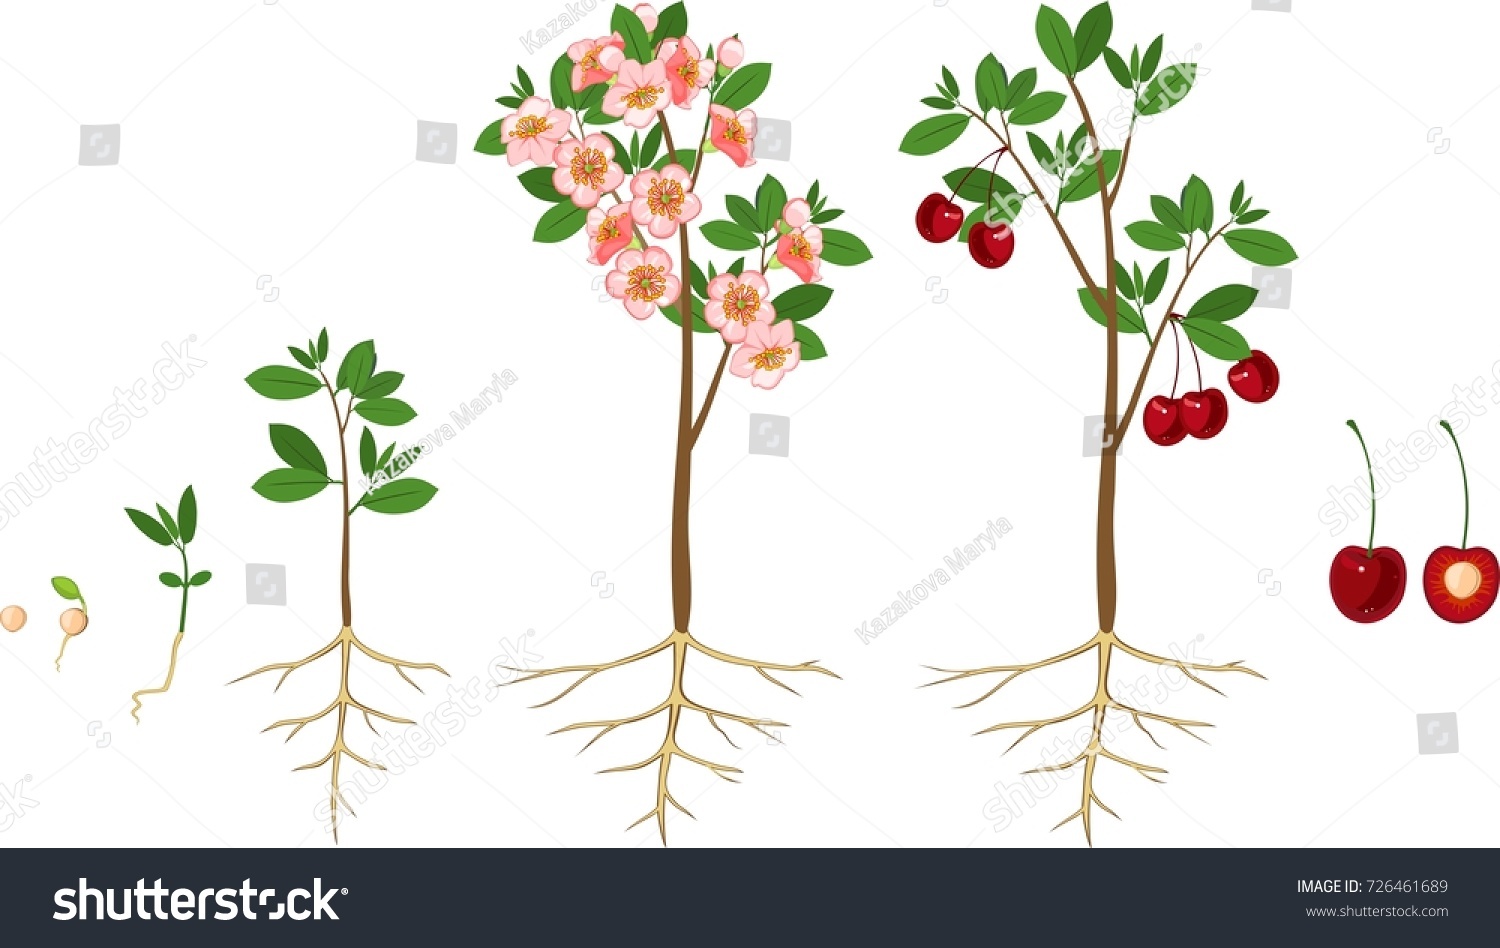 Этапы роста плодового дерева